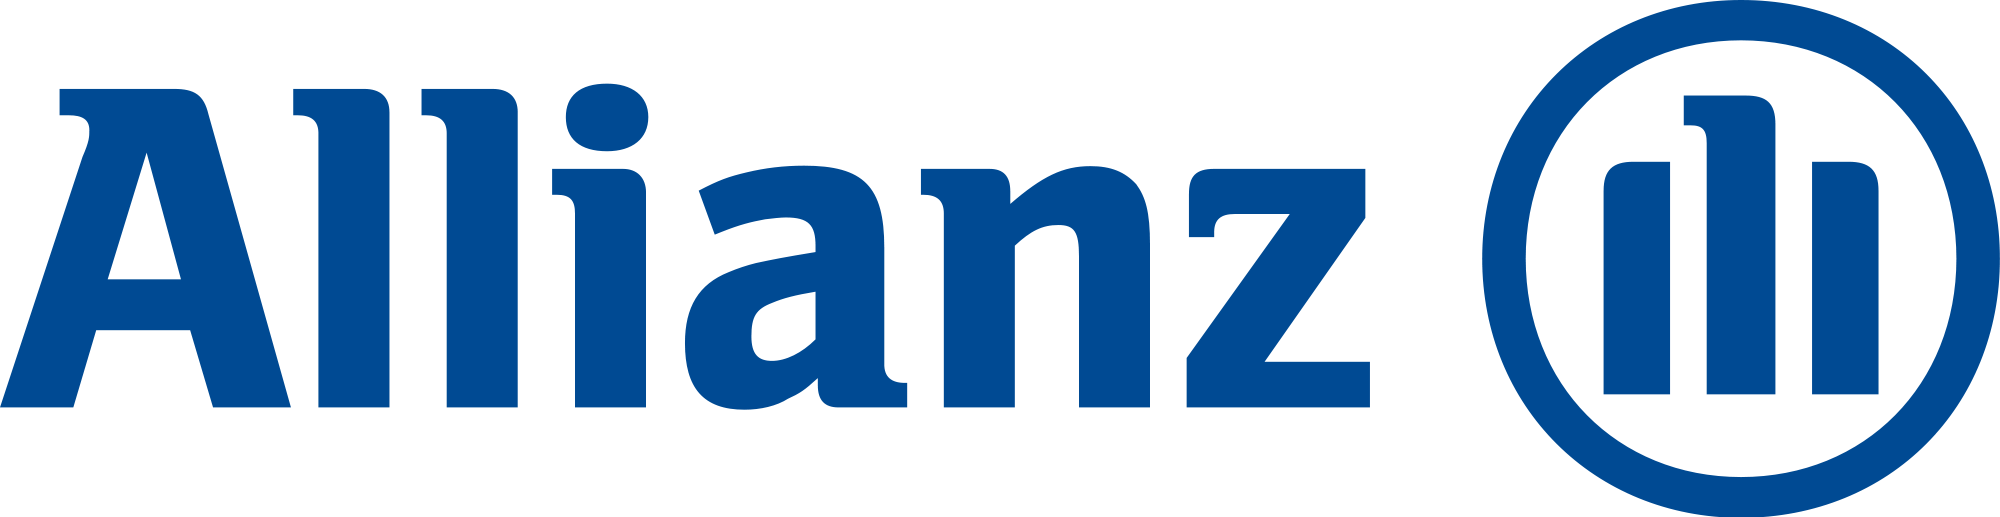 allianz-logo.png